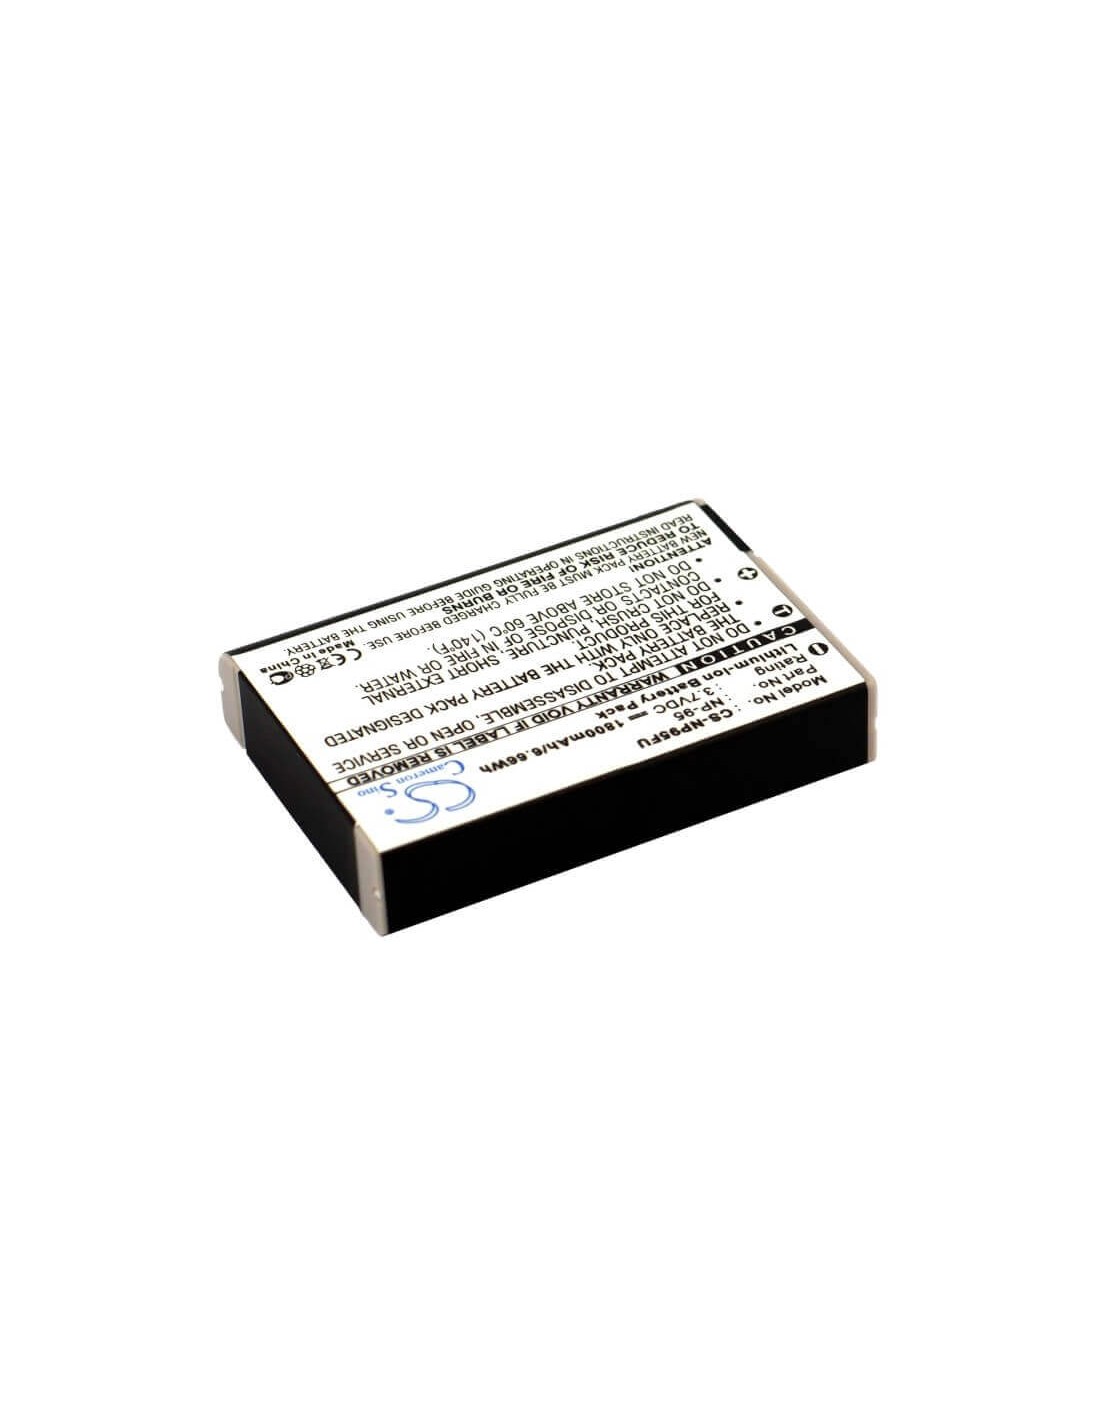 Battery for Ricoh Gxr, Gxr-a12, Gxr-s10 3.7V, 1800mAh - 6.66Wh